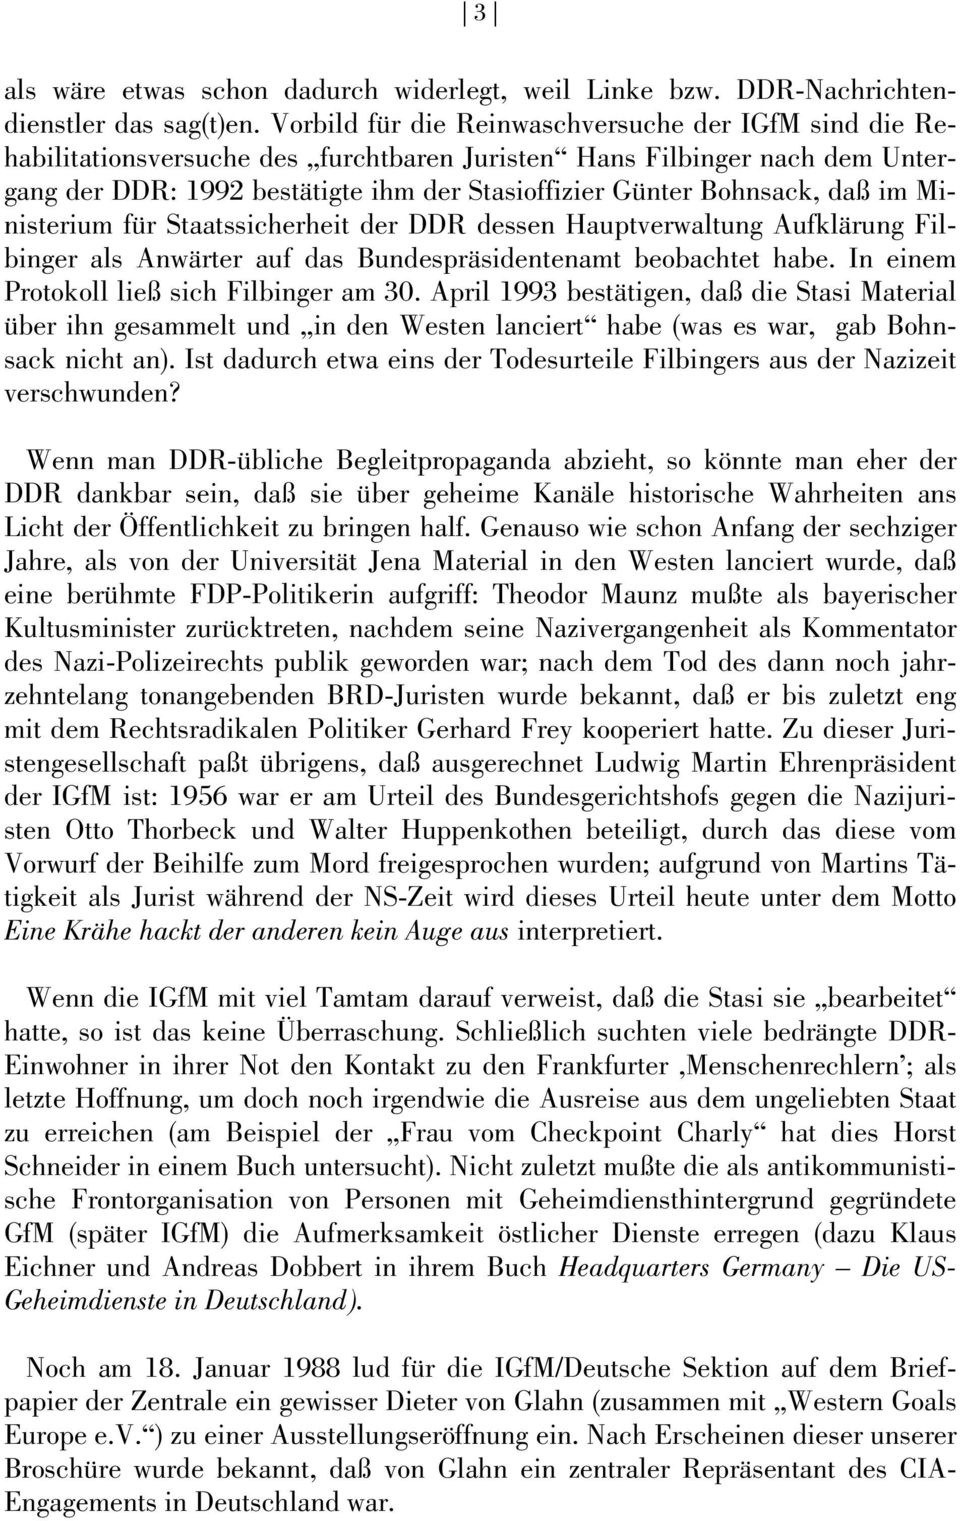 daß im Ministerium für Staatssicherheit der DDR dessen Hauptverwaltung Aufklärung Filbinger als Anwärter auf das Bundespräsidentenamt beobachtet habe. In einem Protokoll ließ sich Filbinger am 30.